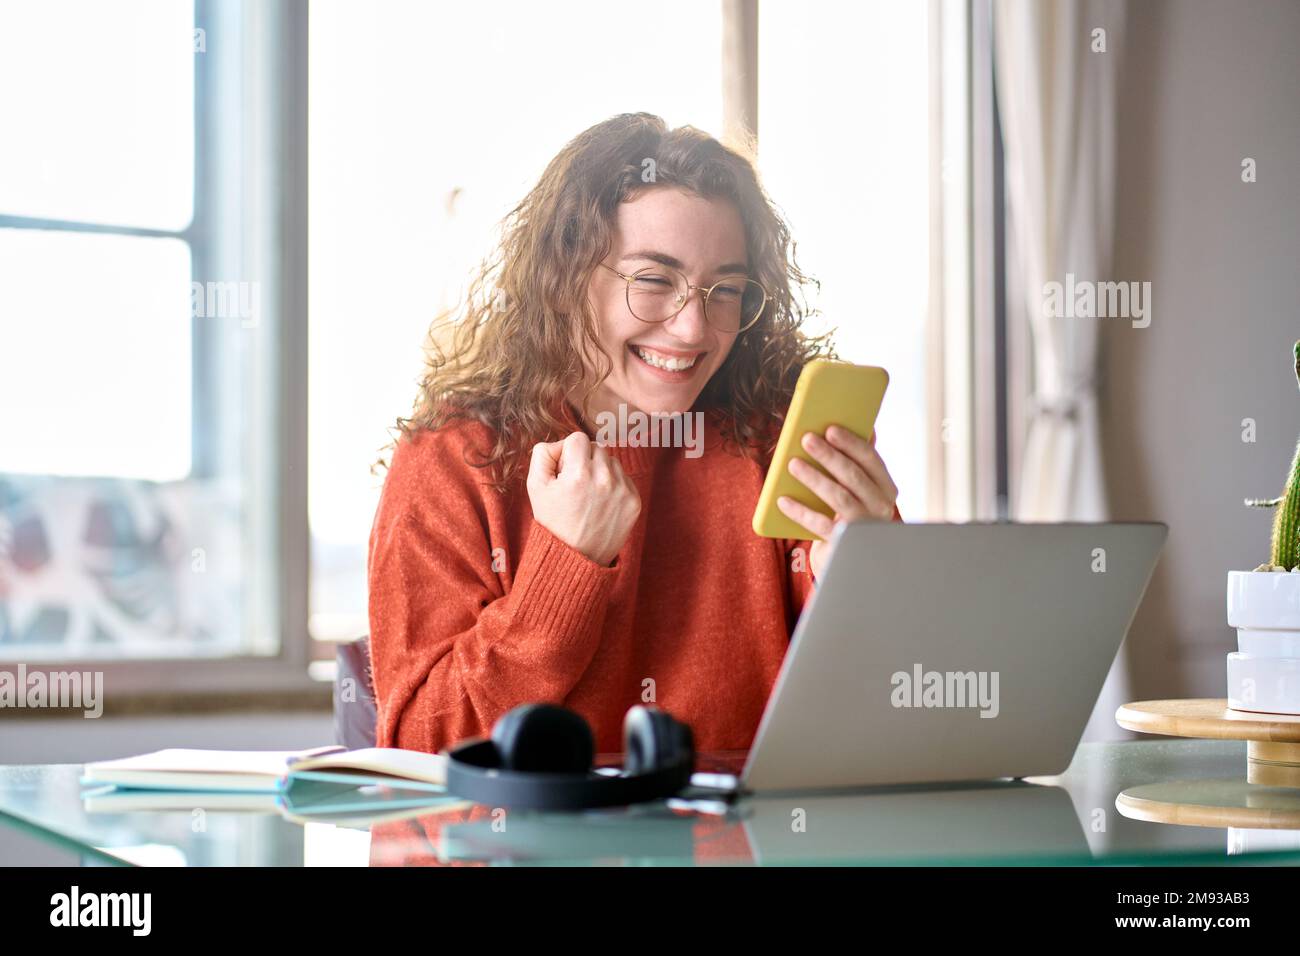 Jeune heureuse heureuse femme étudiante se sentant excitée gagnant regardant le téléphone portable. Banque D'Images